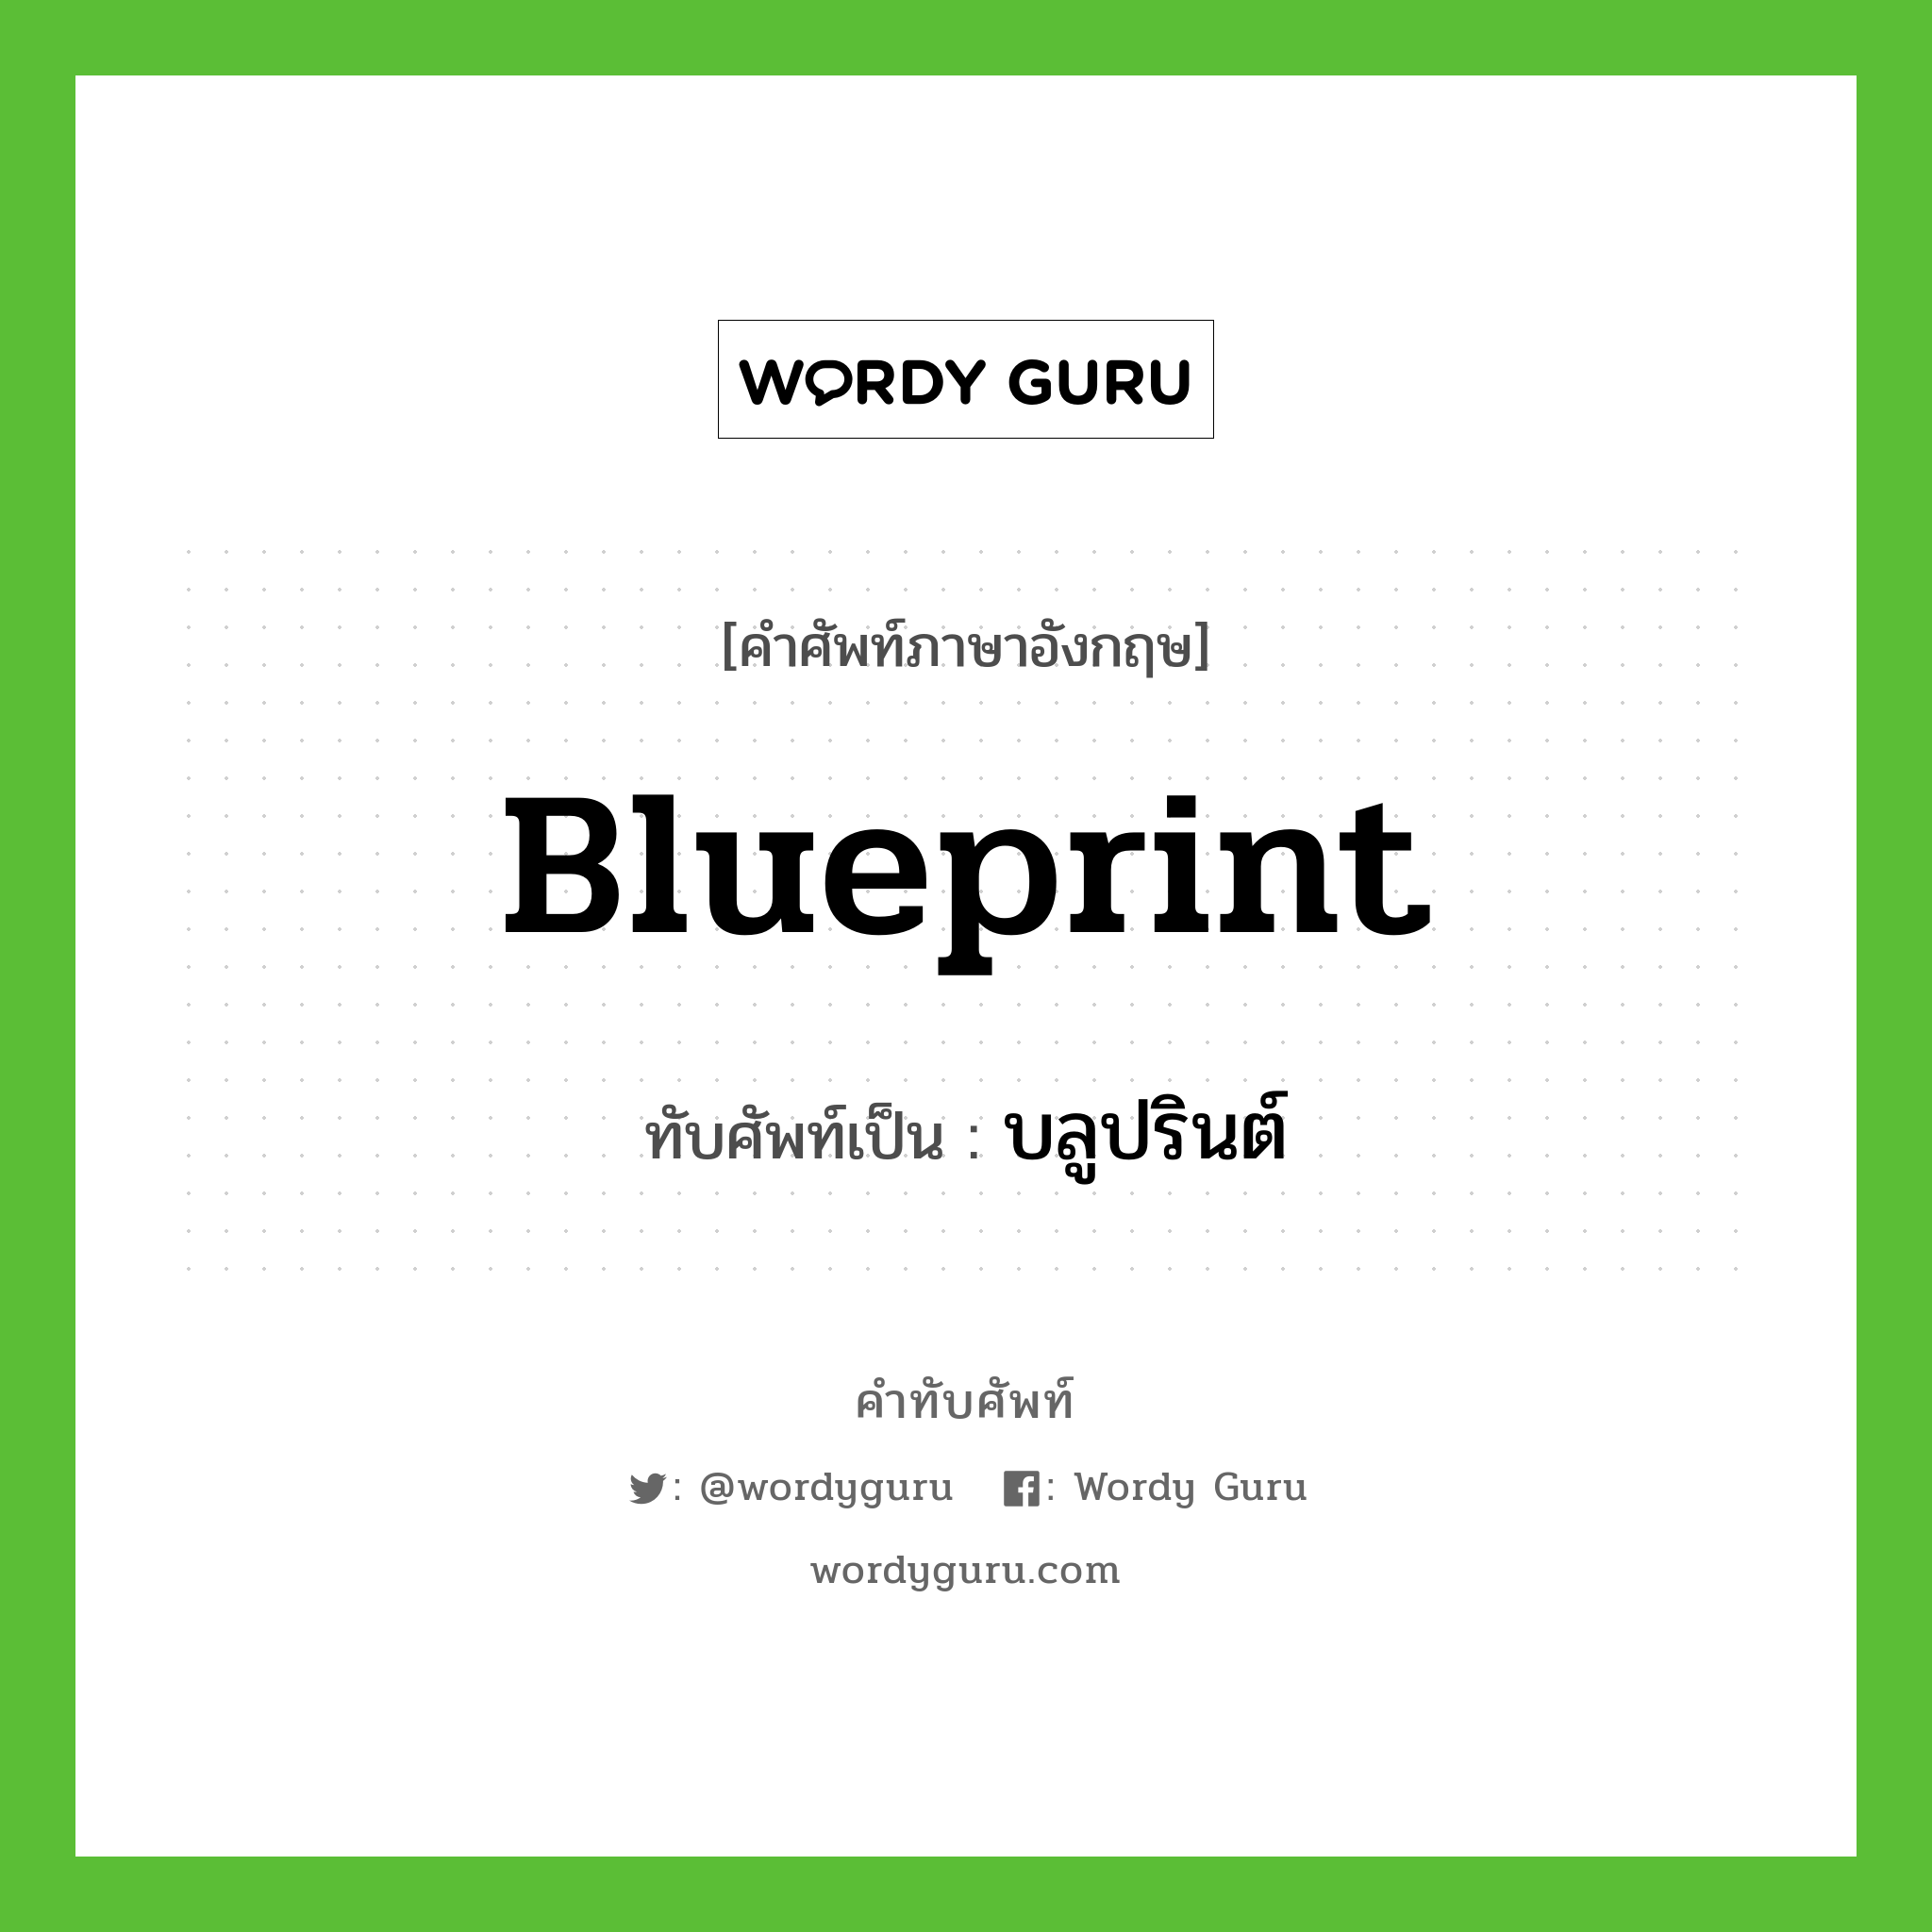 blueprint เขียนเป็นคำไทยว่าอะไร?, คำศัพท์ภาษาอังกฤษ blueprint ทับศัพท์เป็น บลูปรินต์